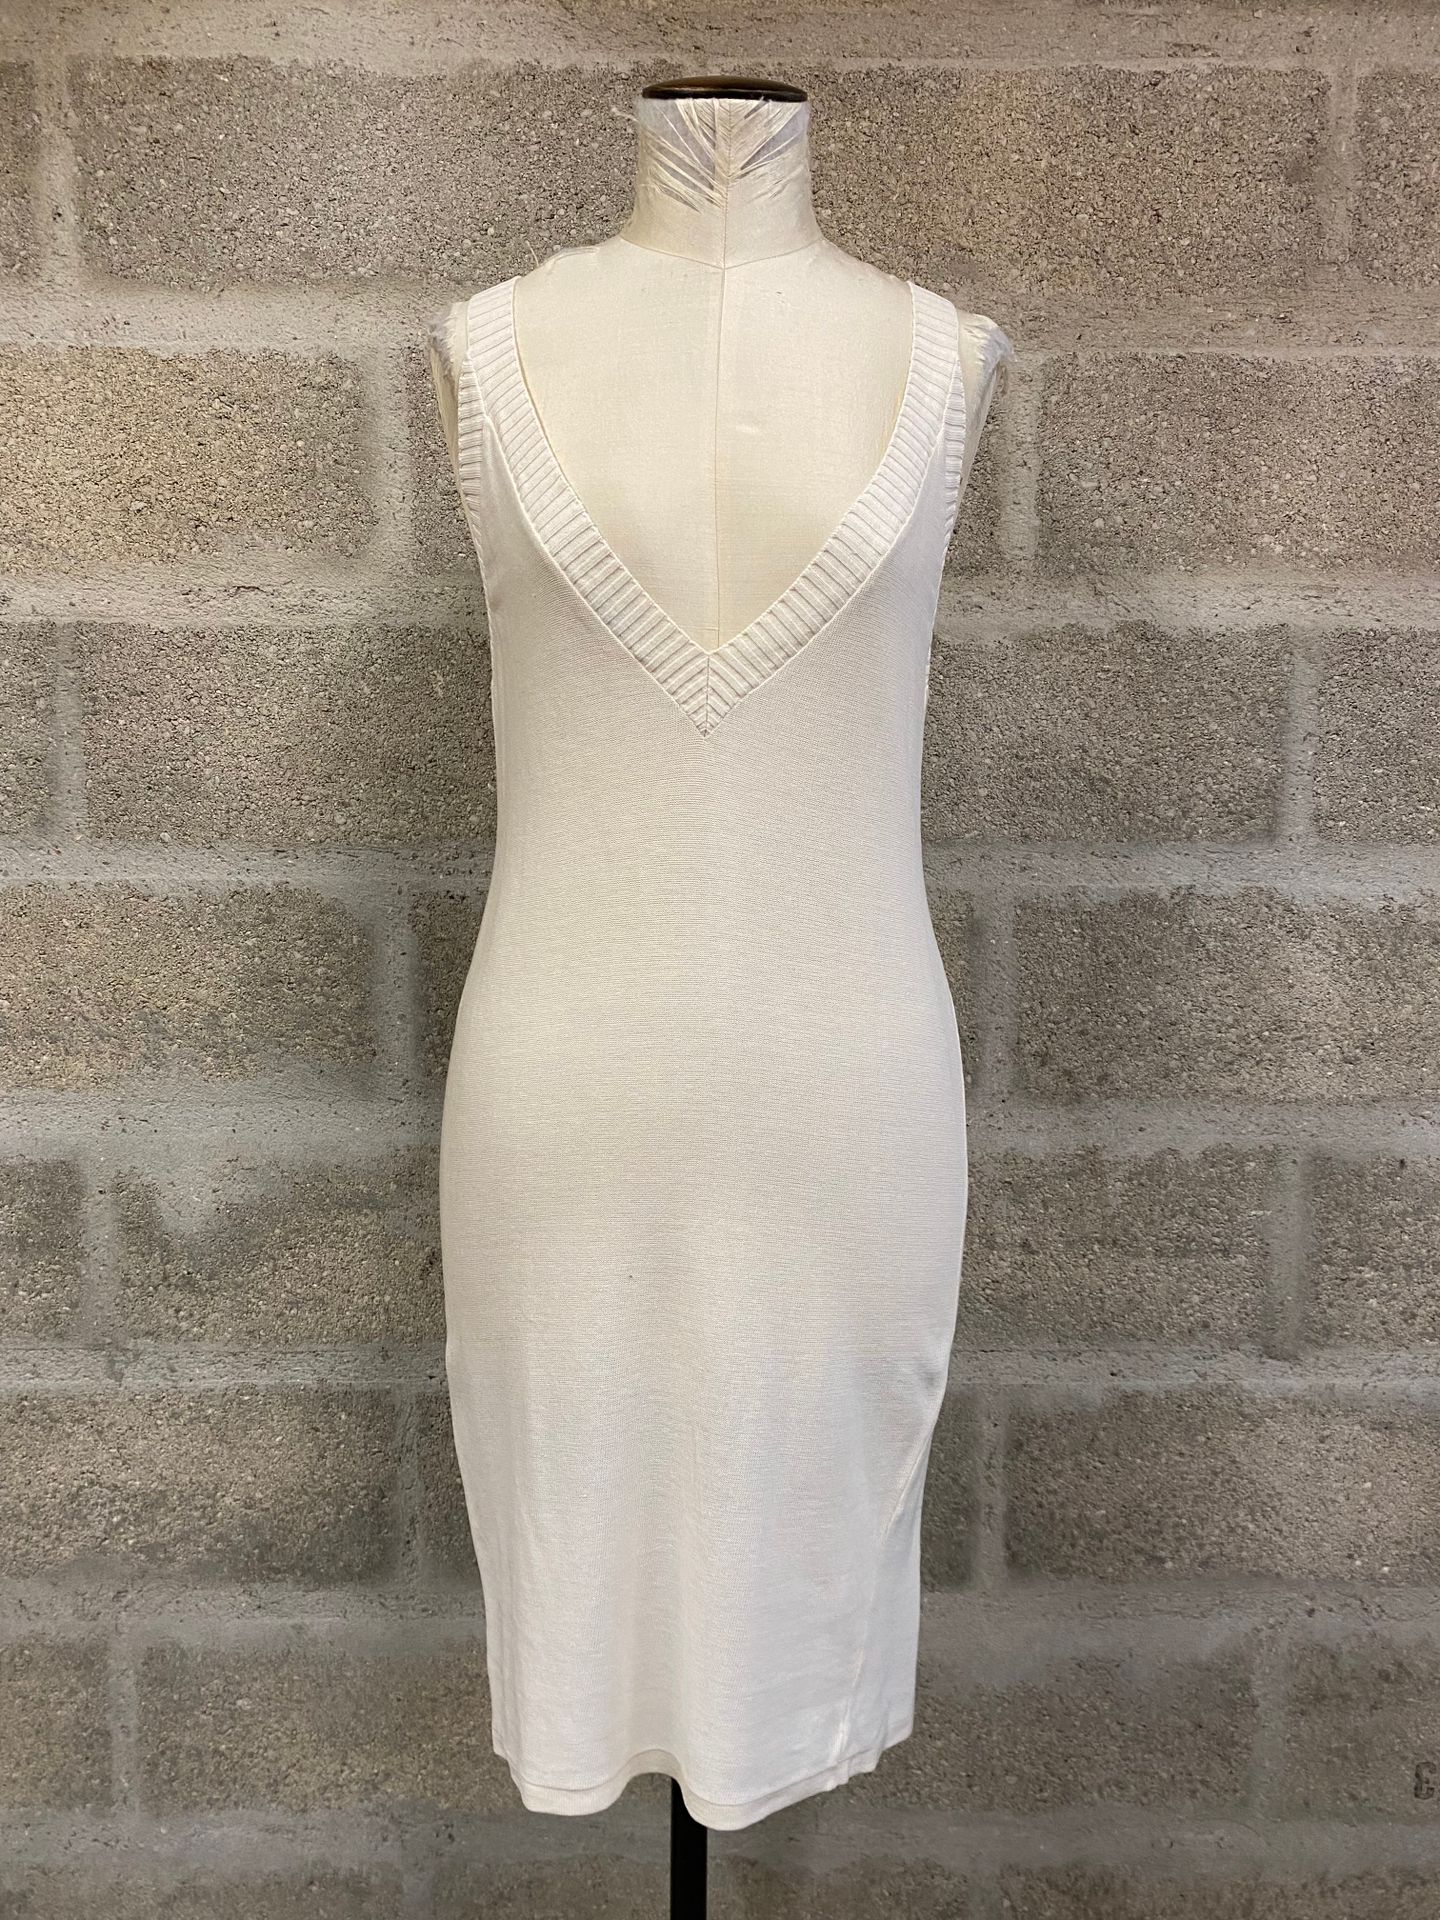 CHLOE - 乳白色棉质针织无肩带连衣裙，背后有V字领口

- 短款棉质针织毛衣裙

使用条件